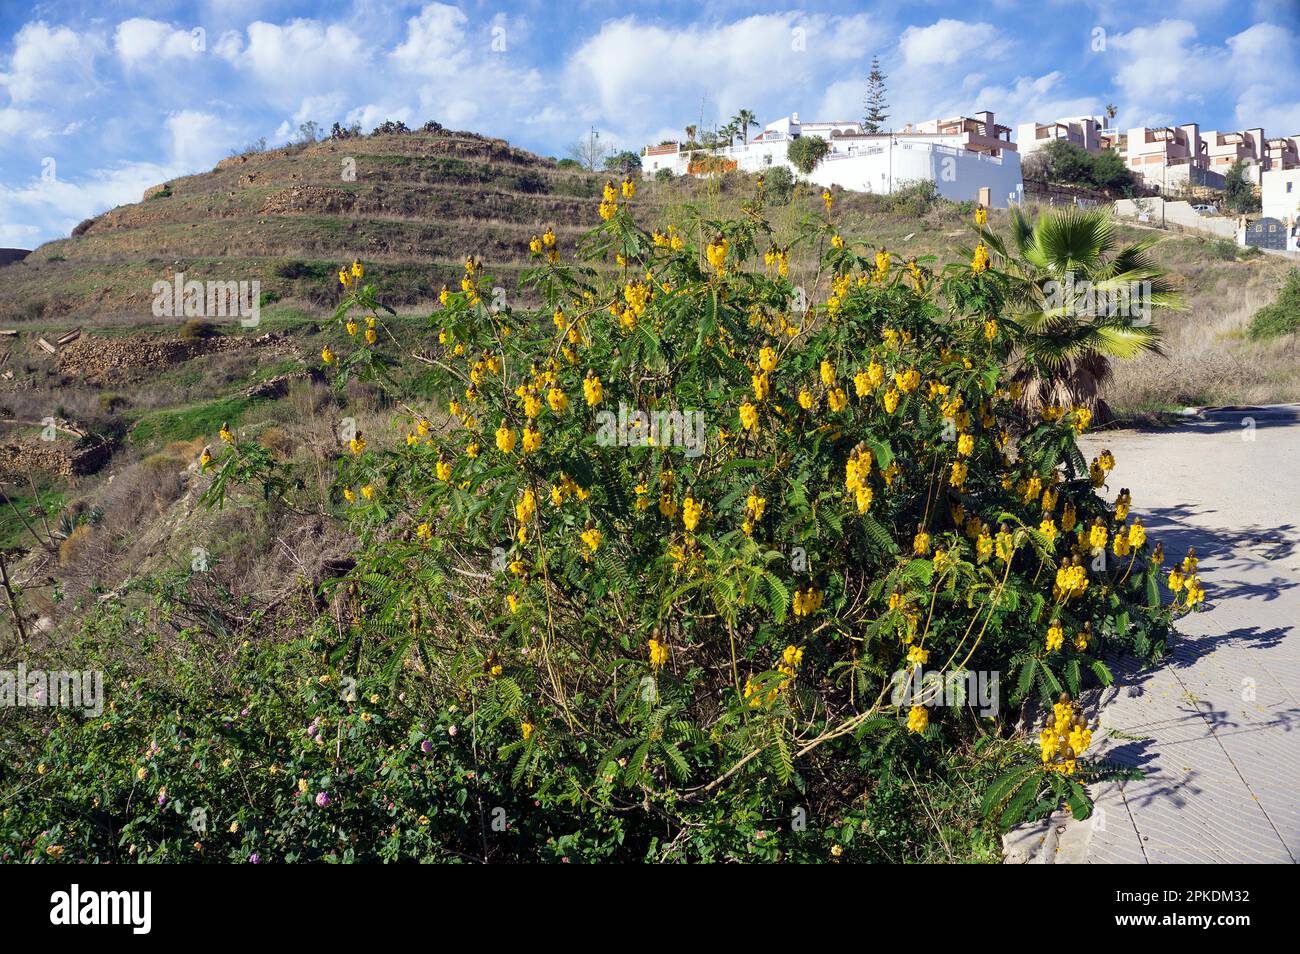 Kerzenbusch (Senna didymobotrya), blühend, heimisch in Afrika, Andalusien, Costa del Sol, Spanien, Europa Stockfoto